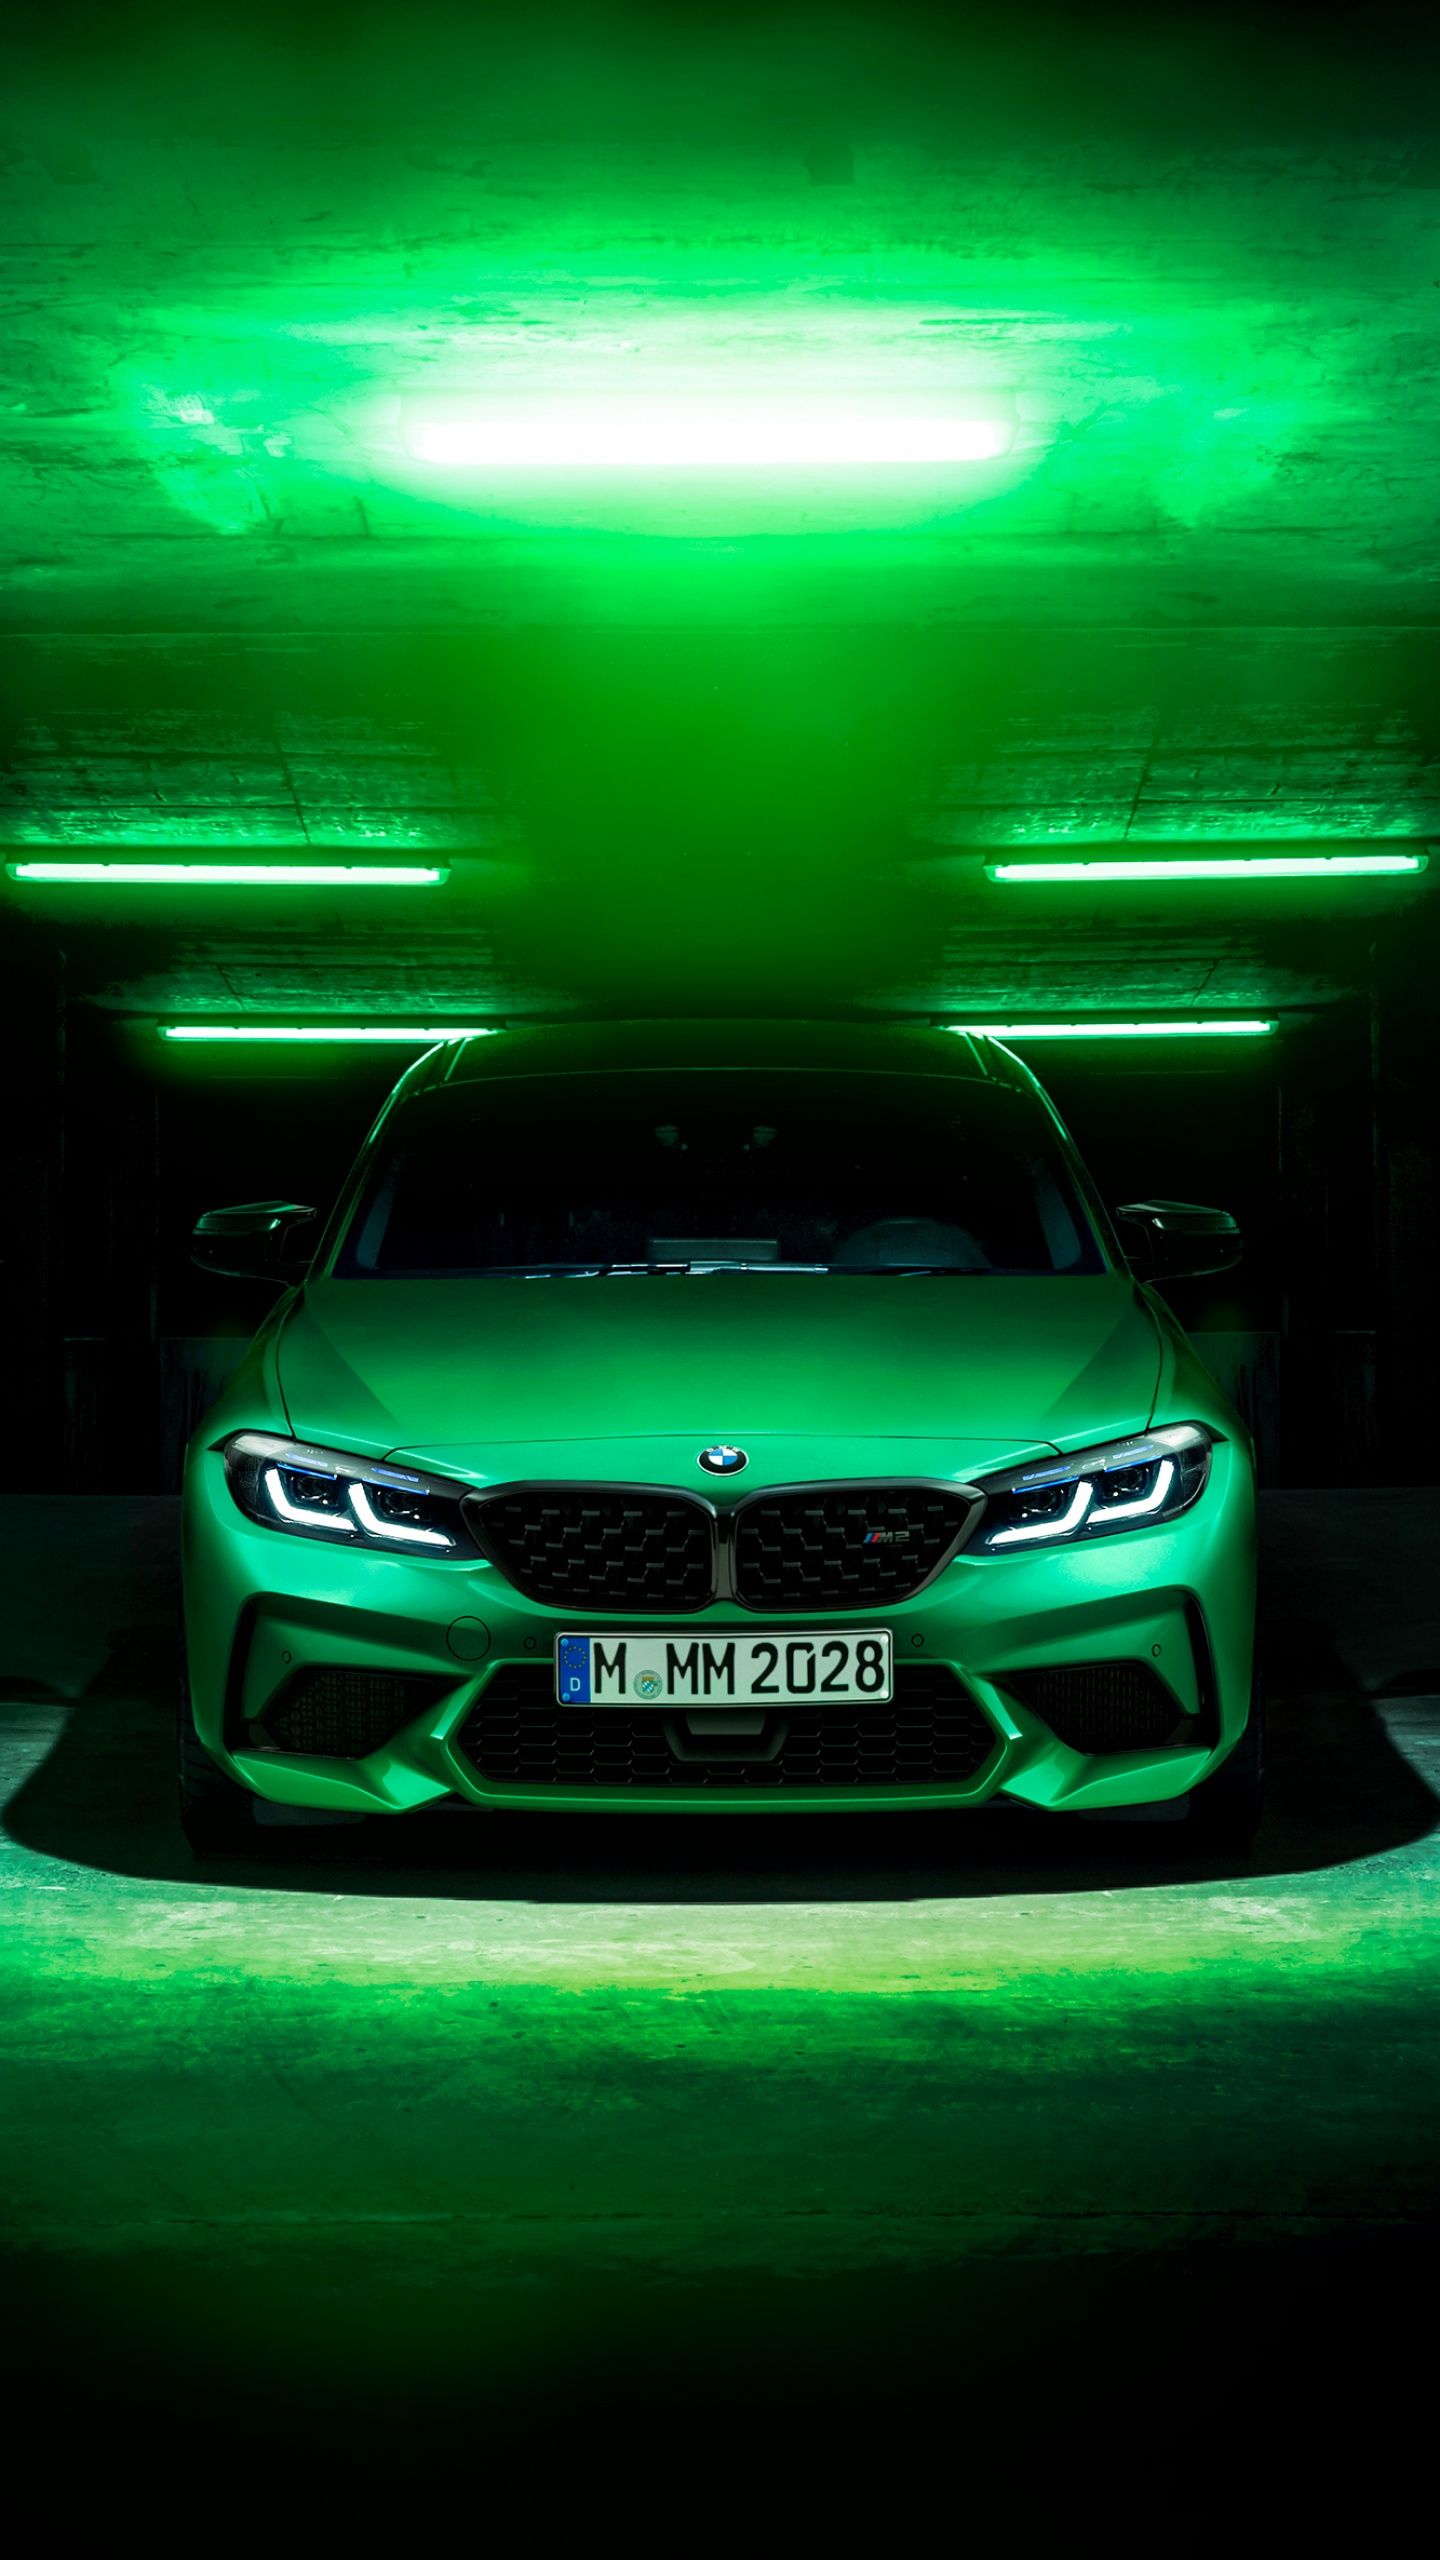 BMW M2 Wallpaper 4K, Green, Dark background, Cars